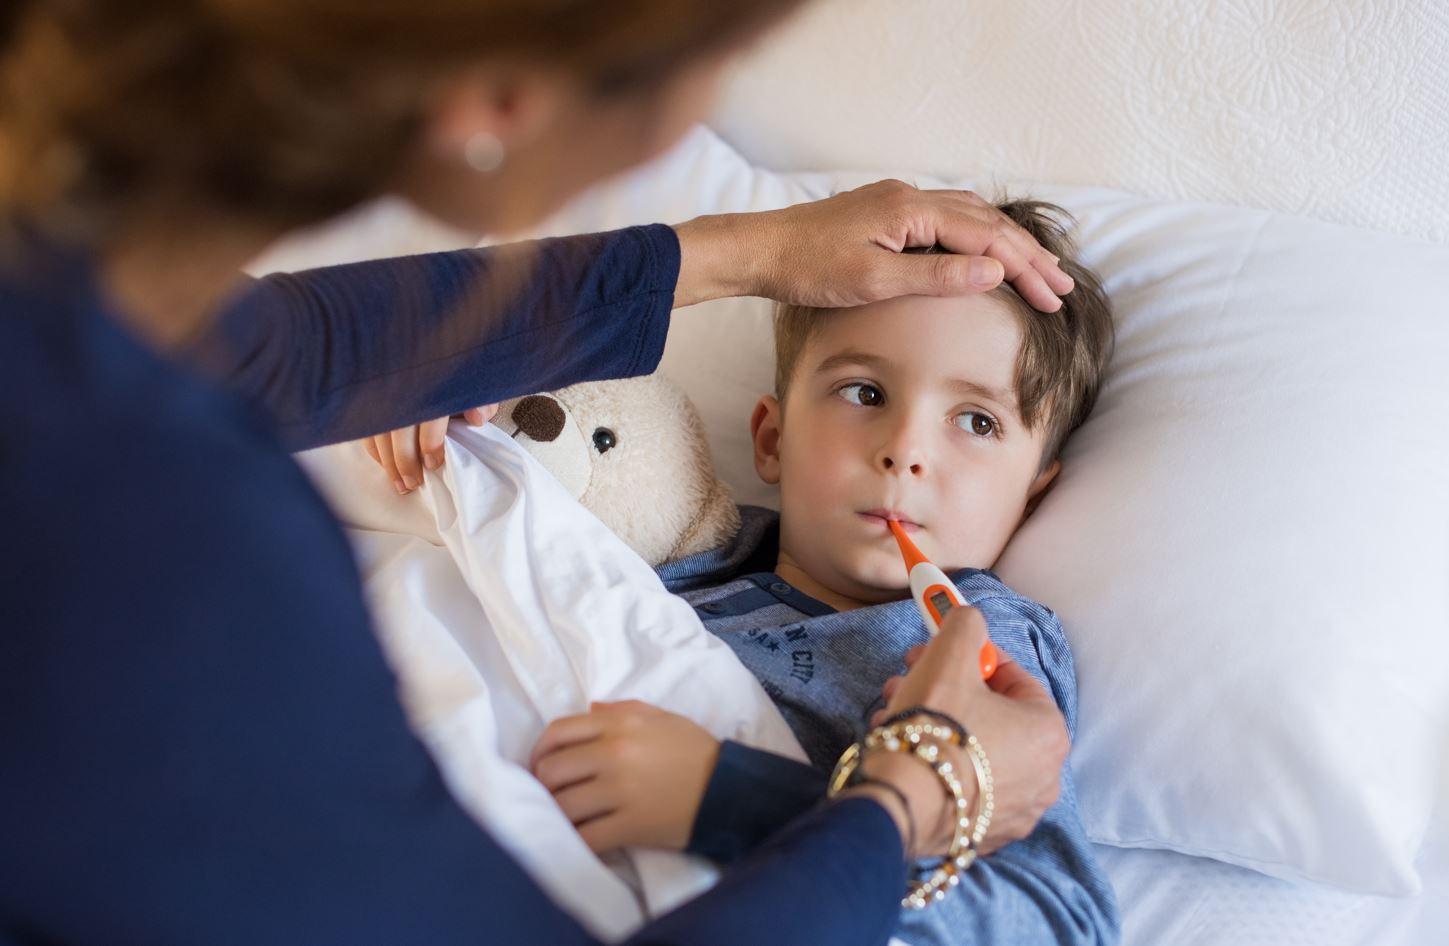 Numărul de viroze respiratorii, în cazul copiilor, este în creștere. Care e motivul și ce spun medicii pediatrii îngrijorați